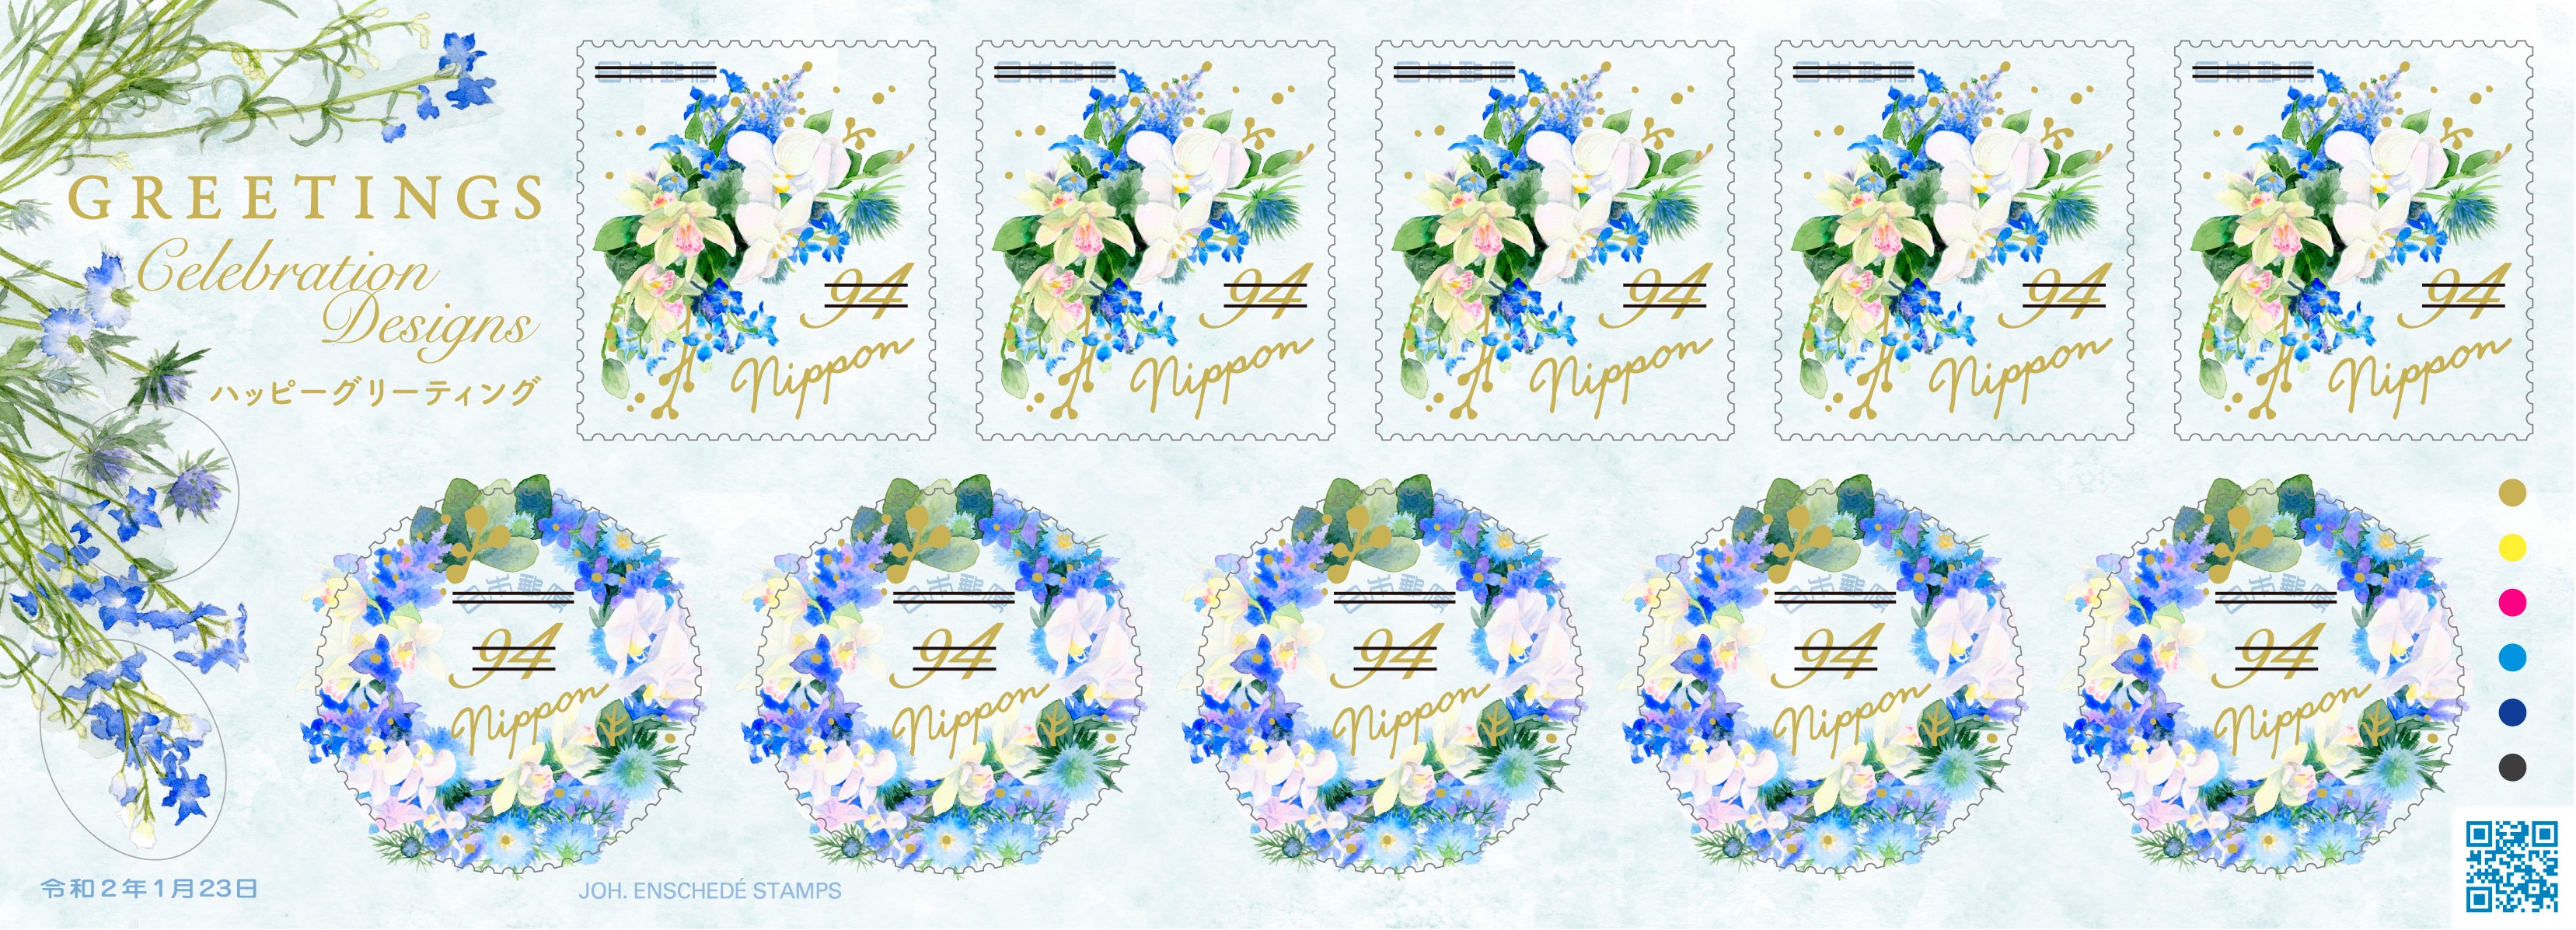 グリーティング切手 ハッピーグリーティング | 日本郵便株式会社